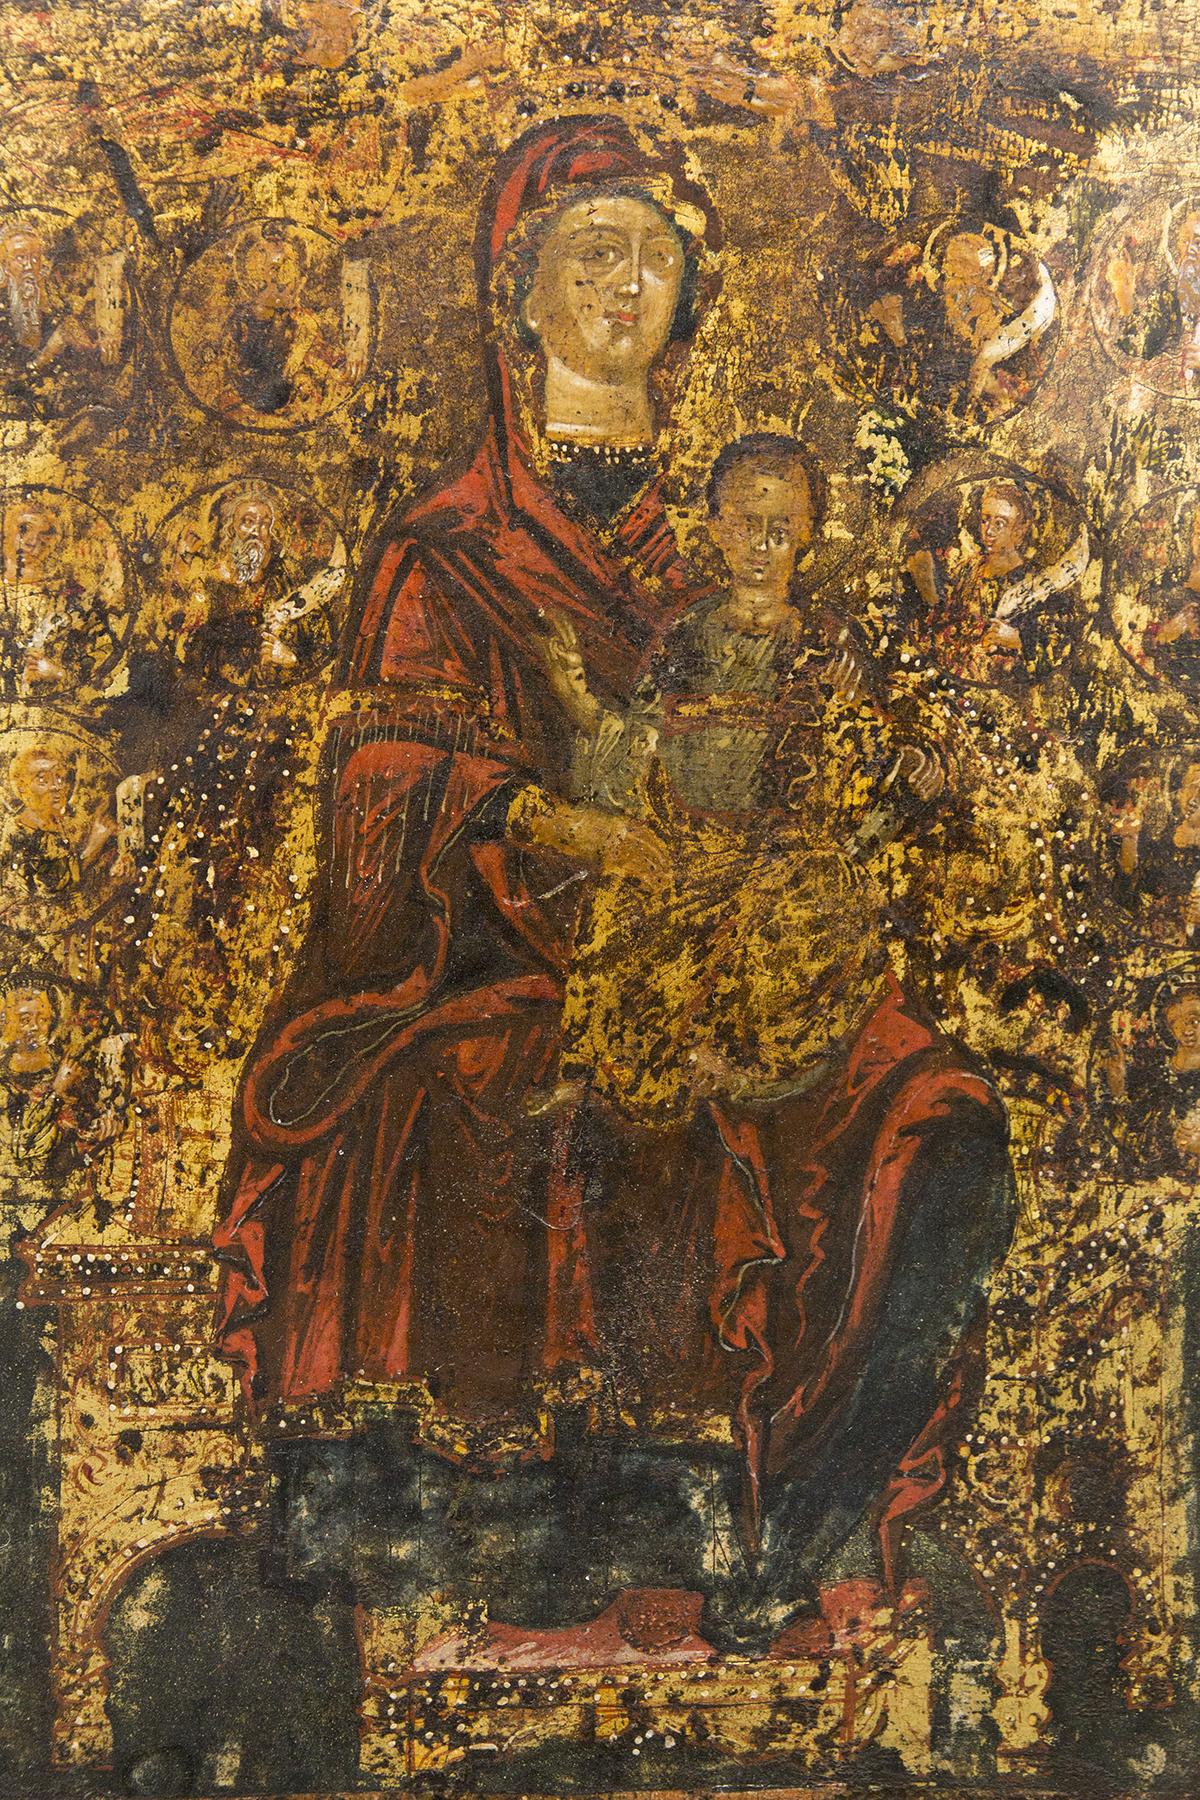 Prächtige antike Ikone, entworfen 1300 und 1400, italienische Herstellung.
Das Gemälde befindet sich auf einer rechteckigen Holztafel. Das Gemälde zeigt die Jungfrau Maria auf einem Thron sitzend mit Jesus Christus in ihren Armen.
Auf der Seite